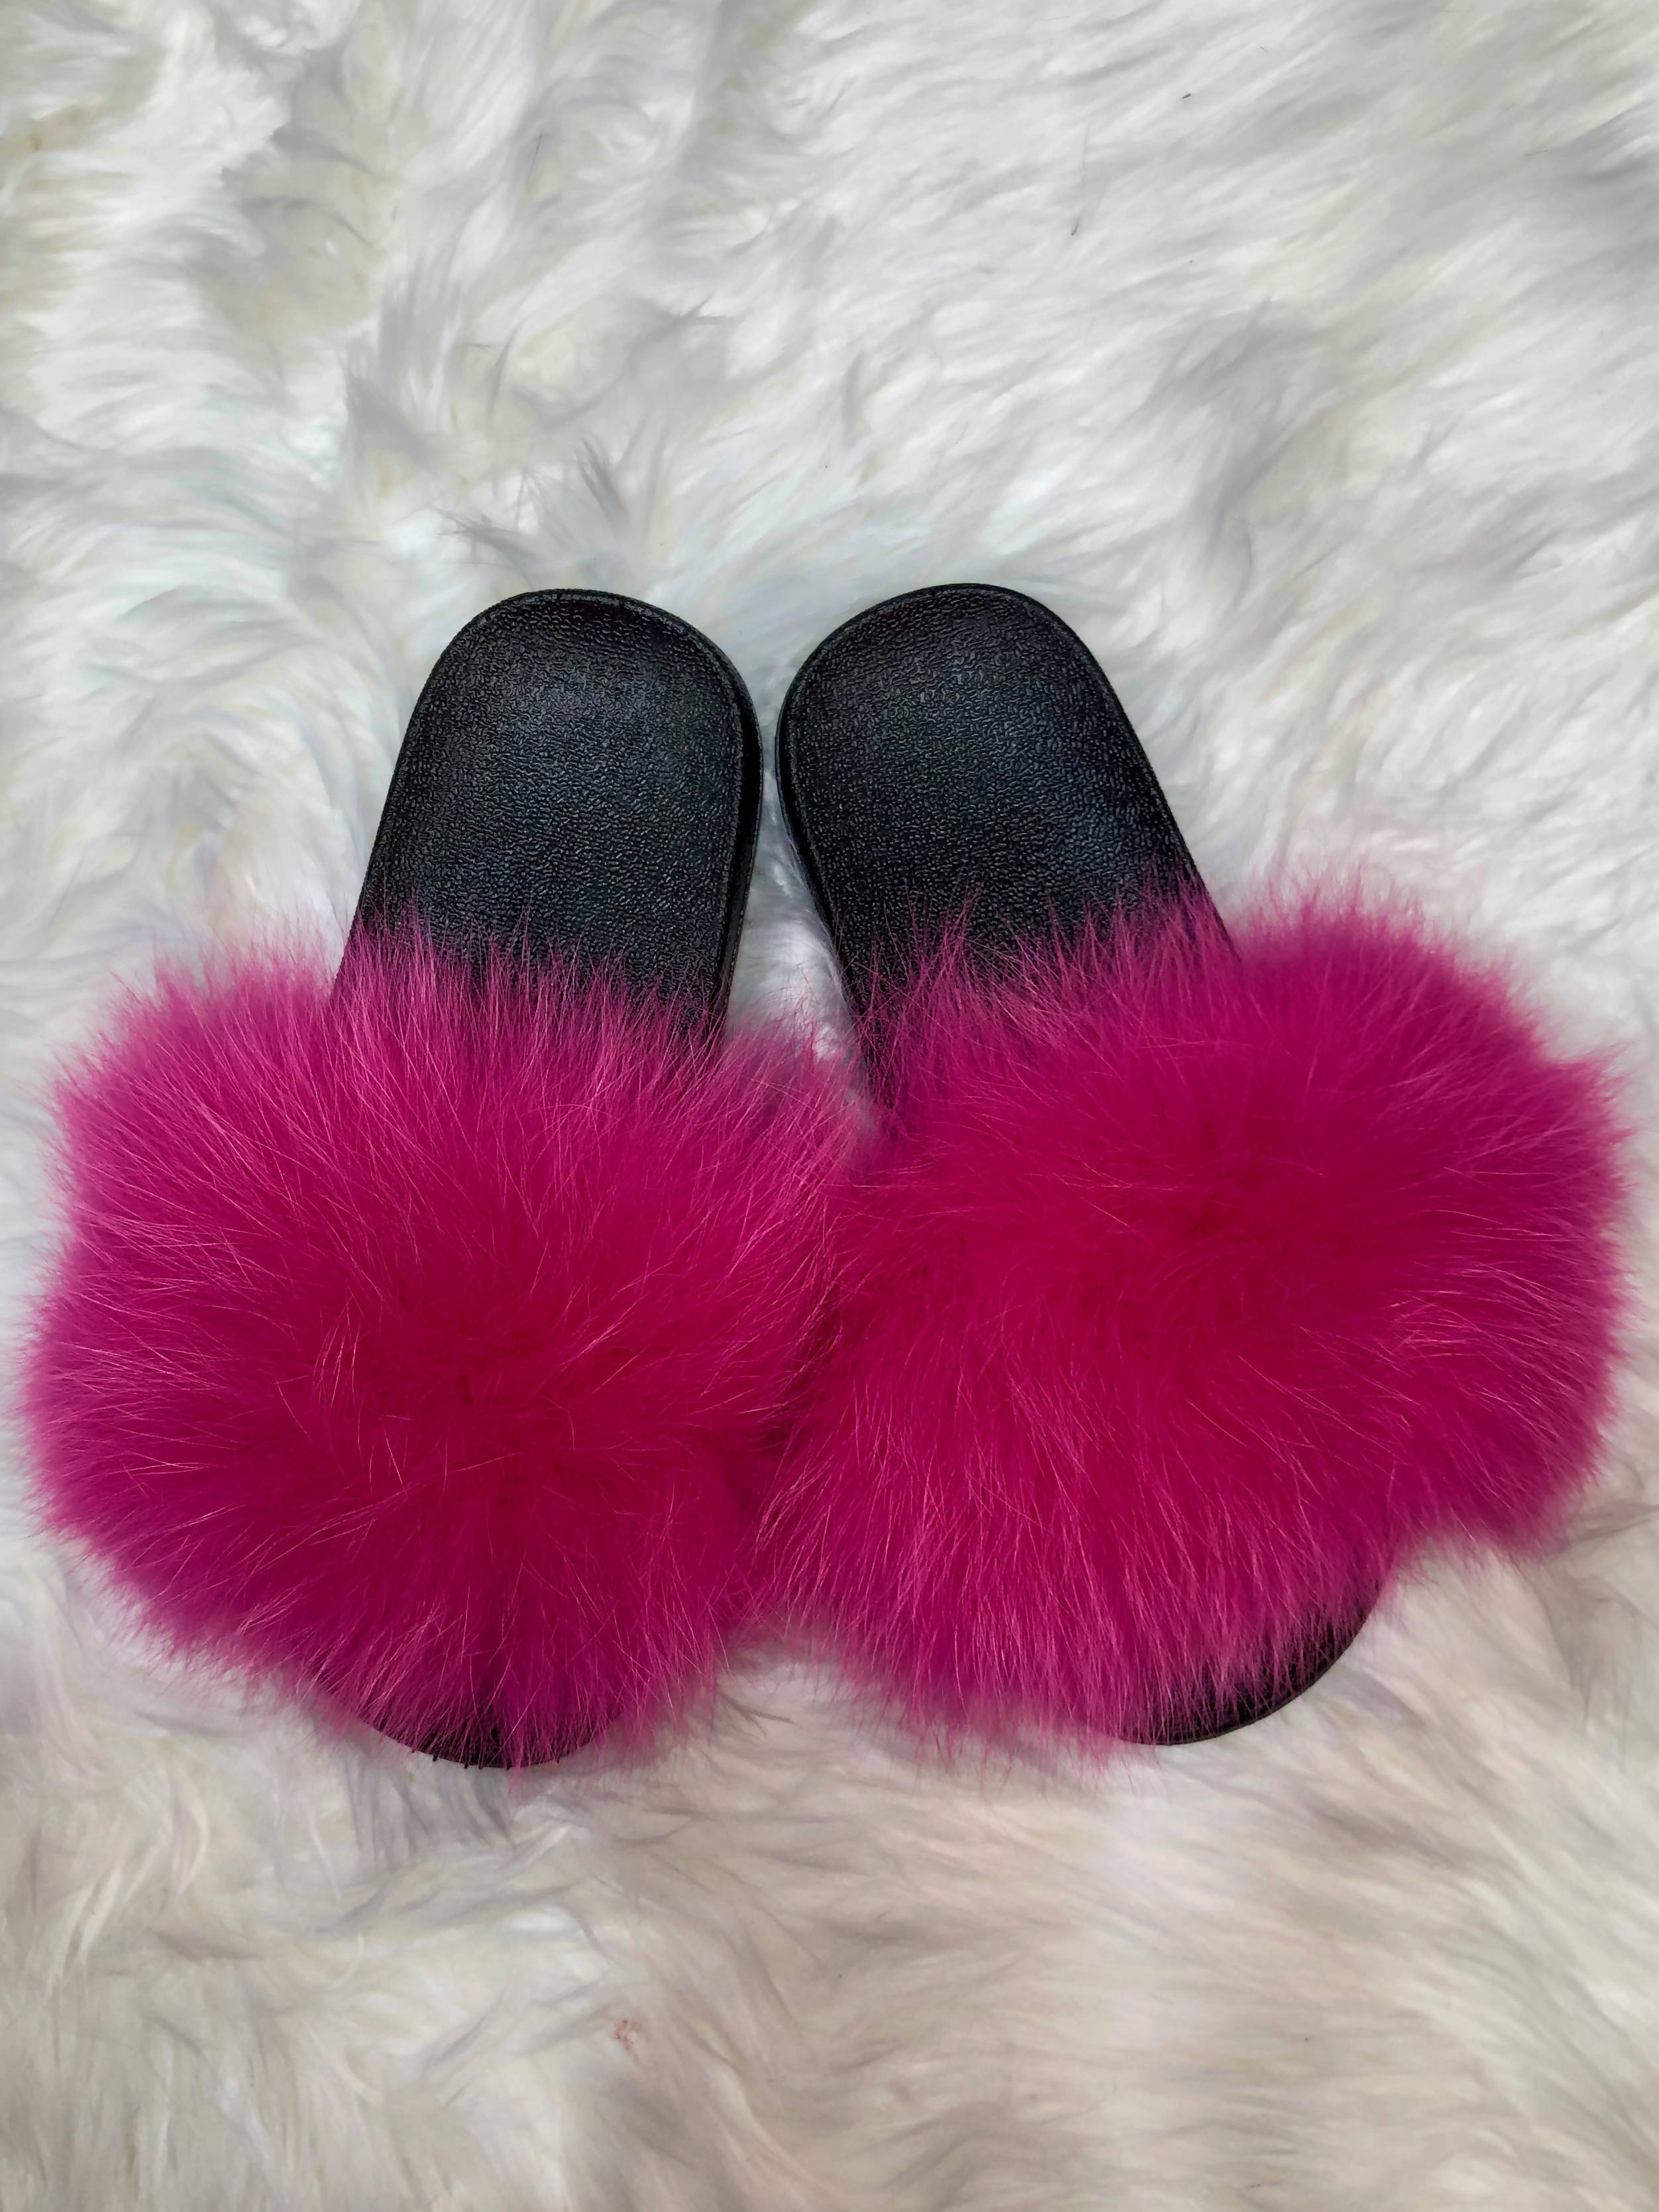 Maci Black Fluffy Faux Fur Slippers | SIMMI London